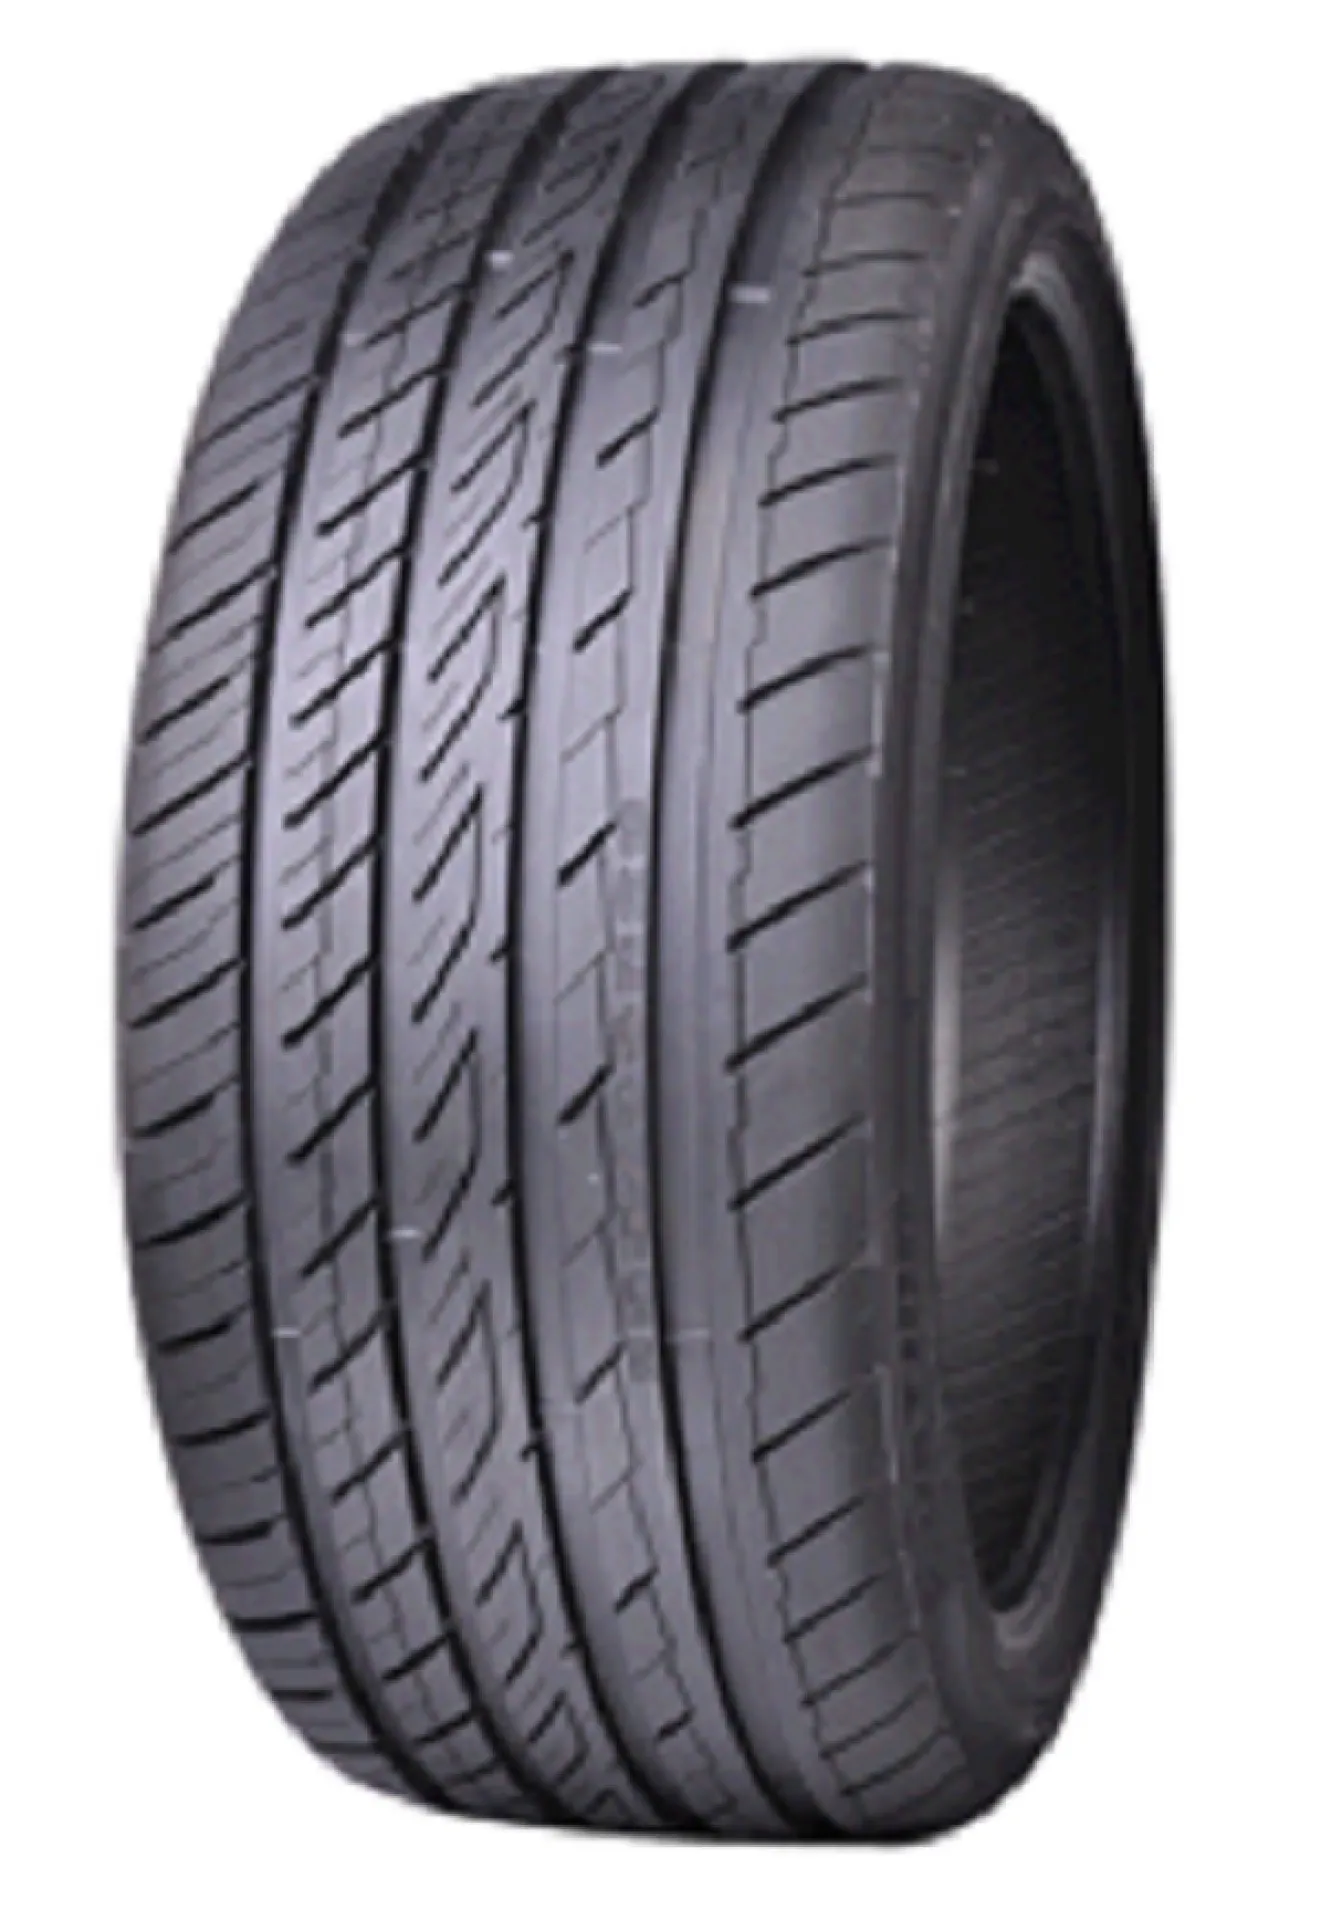 Ovation tyres vi 388. Ovation vi-388 225/55 r17. Ovation vi-388 225/50 r17. Ovation Tyres vi-388 225/55 r17.